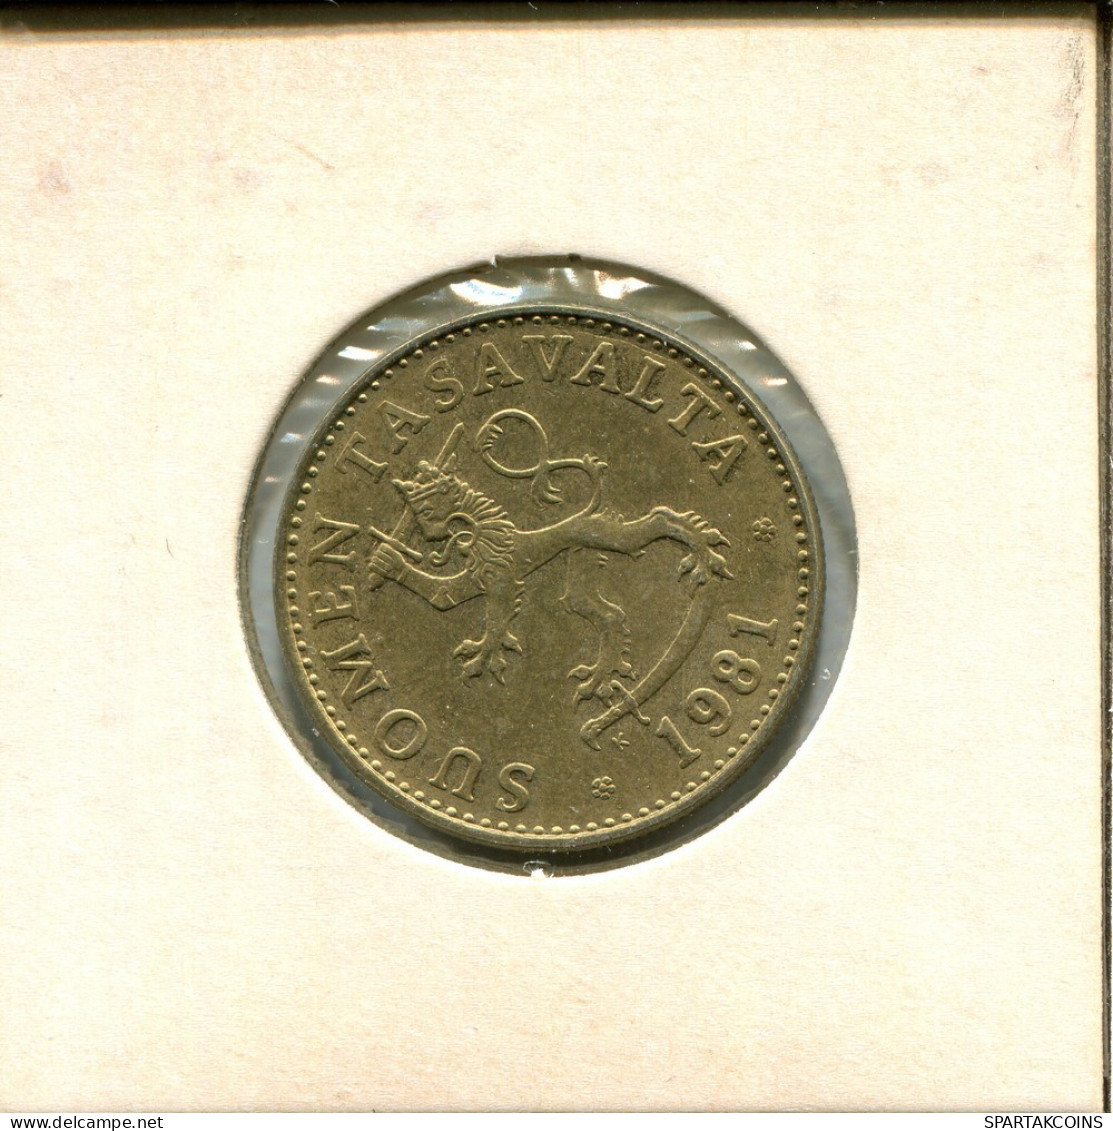 50 PENNYA 1981 FINLAND Coin #AS742.U.A - Finlande